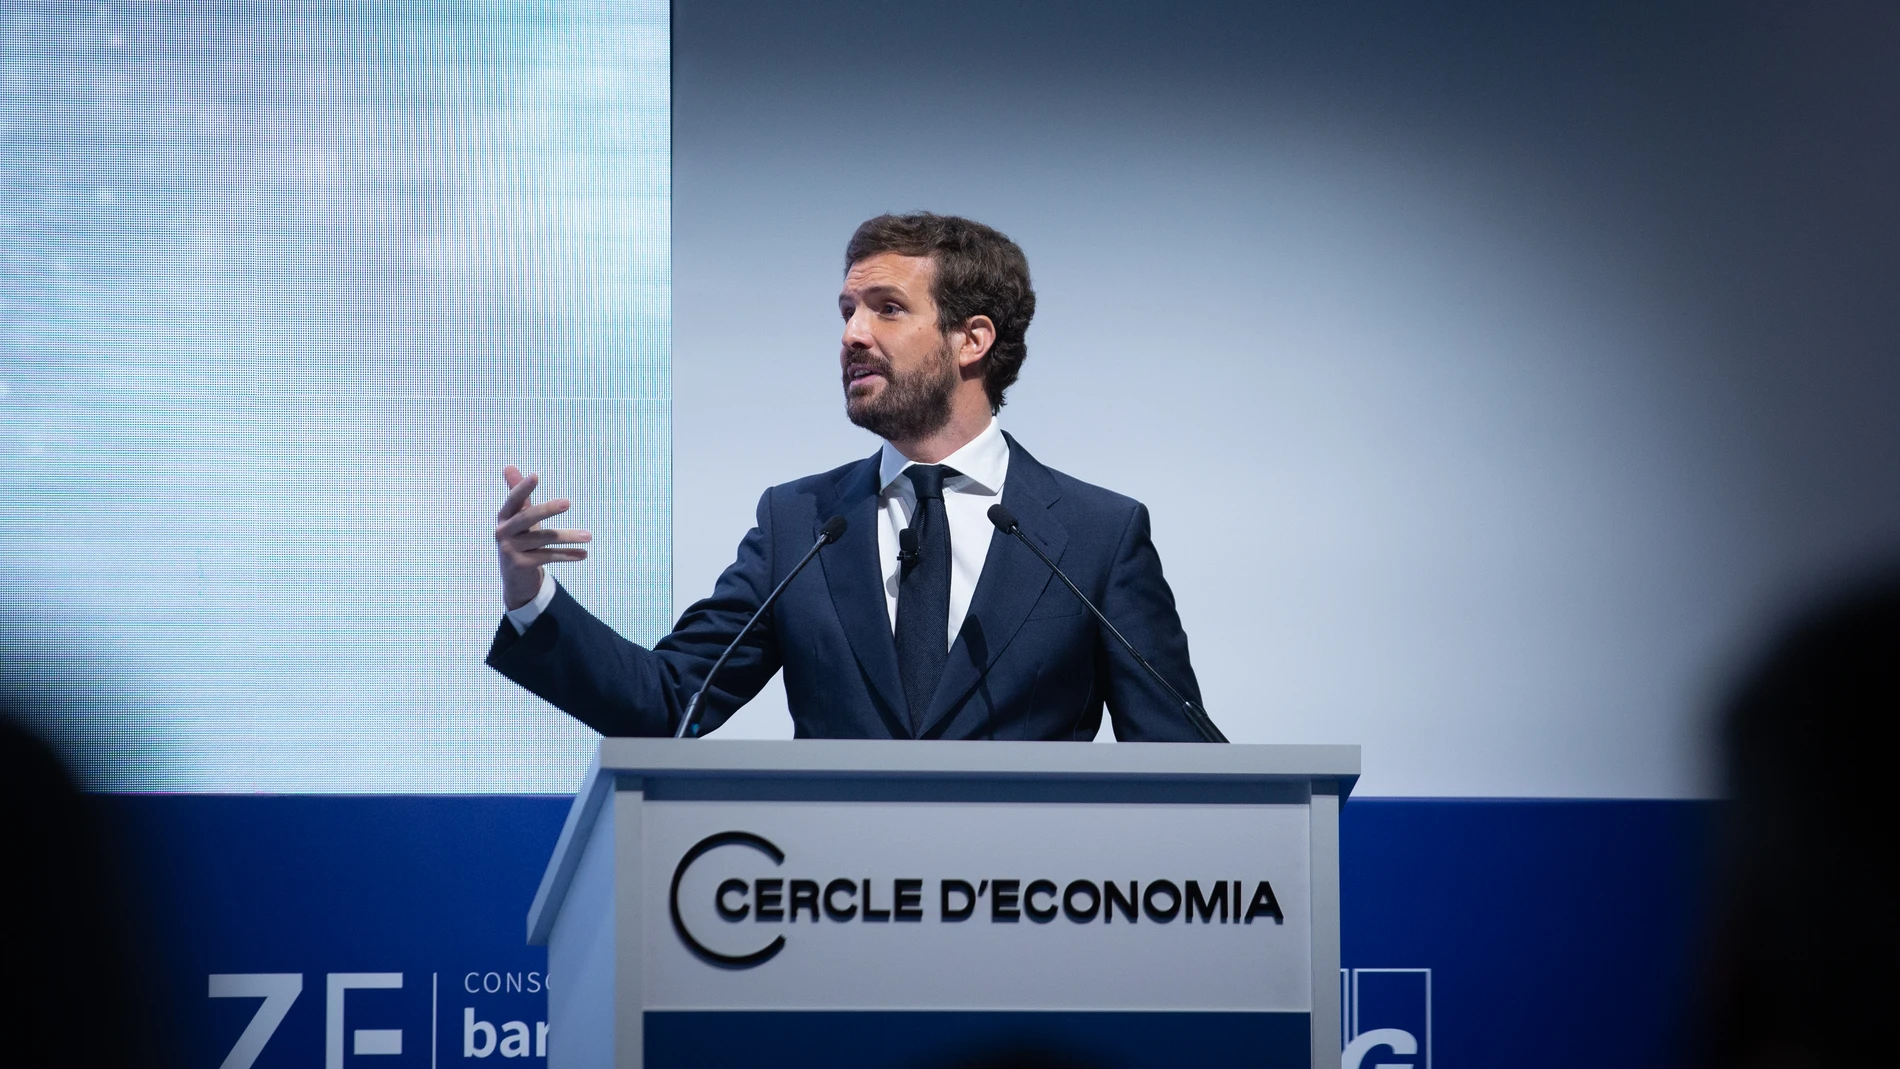 El líder del PP, Pablo Casado, interviene en la inauguración de la segunda jornada de la XXXVI Reunión del Cercle d'Economia